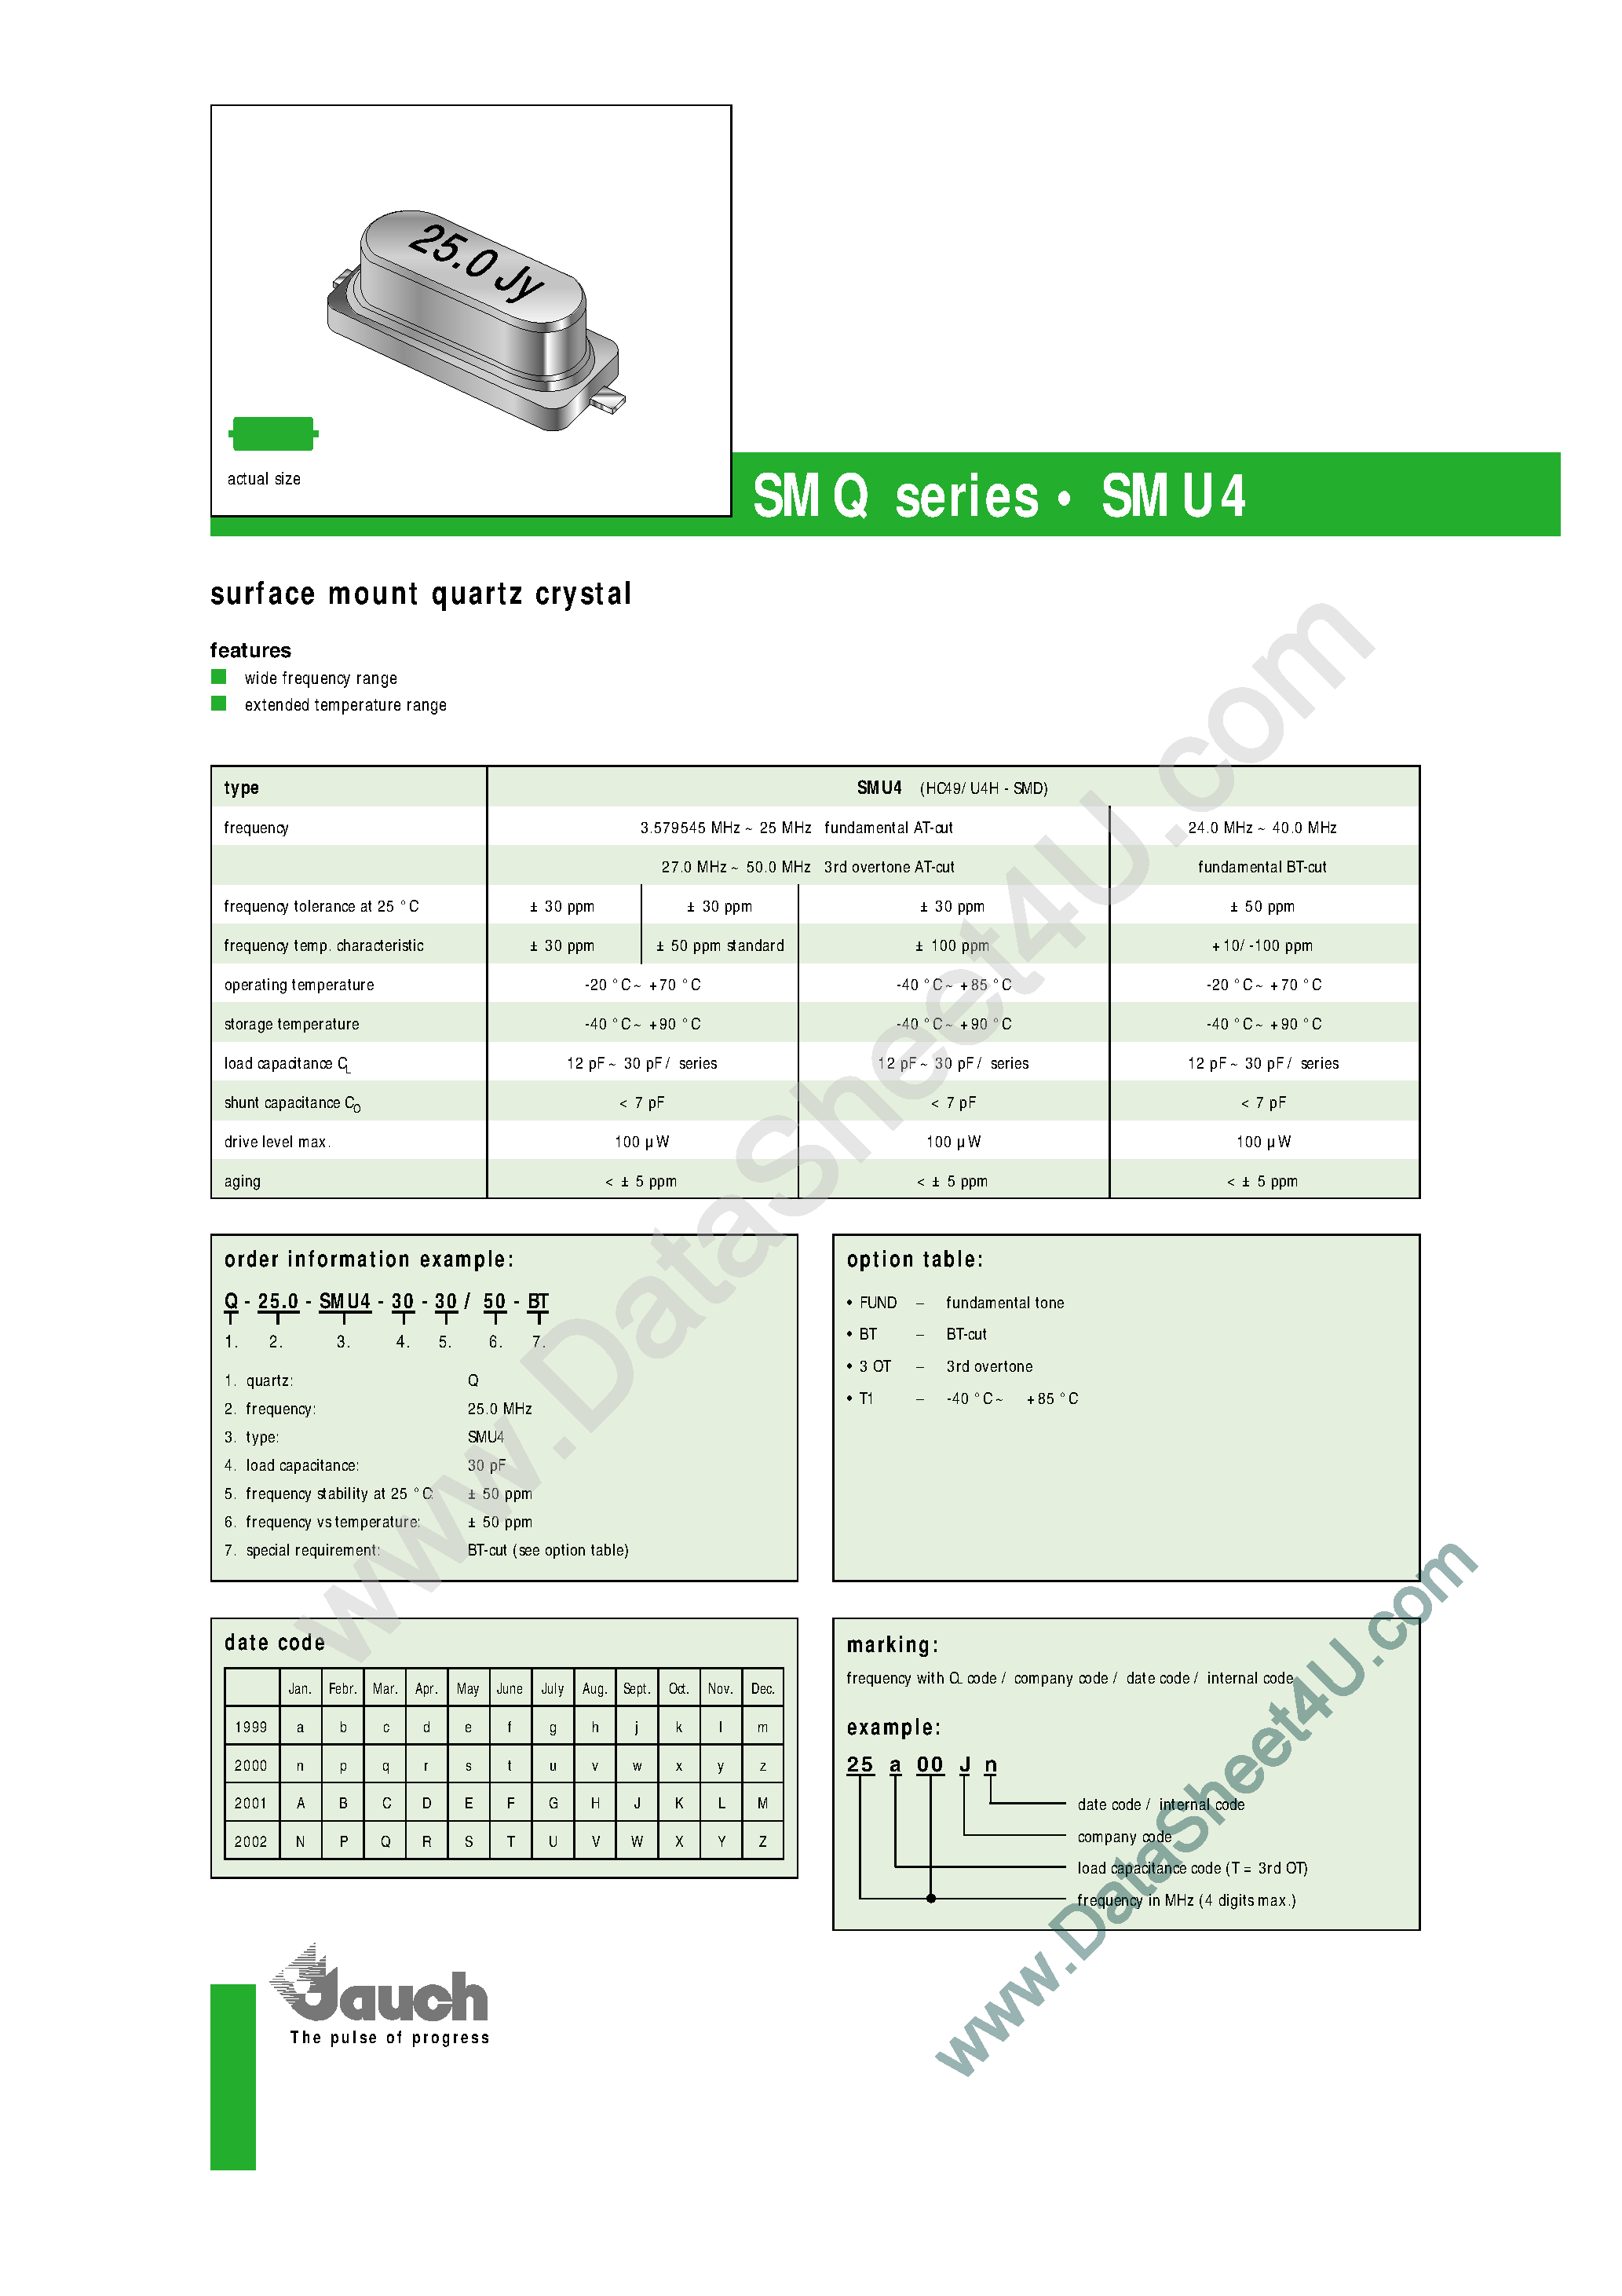 Datasheet Q-25.0-SMU4-18-30 - (SMU4 Series) Surface Mount Quartz Crystal page 1